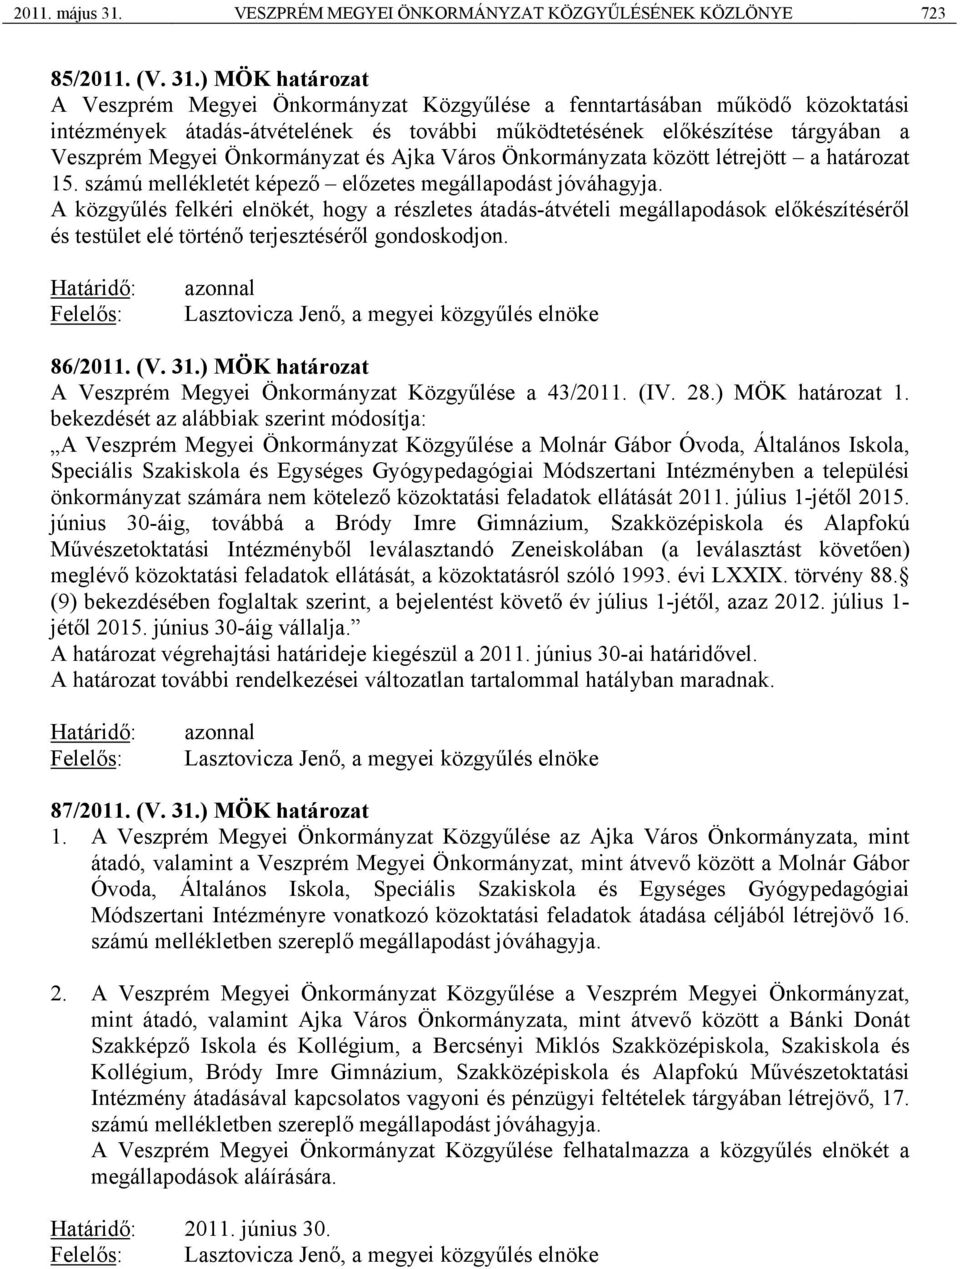 ) MÖK határozat A Veszprém Megyei Önkormányzat Közgyűlése a fenntartásában működő közoktatási intézmények átadás-átvételének és további működtetésének előkészítése tárgyában a Veszprém Megyei